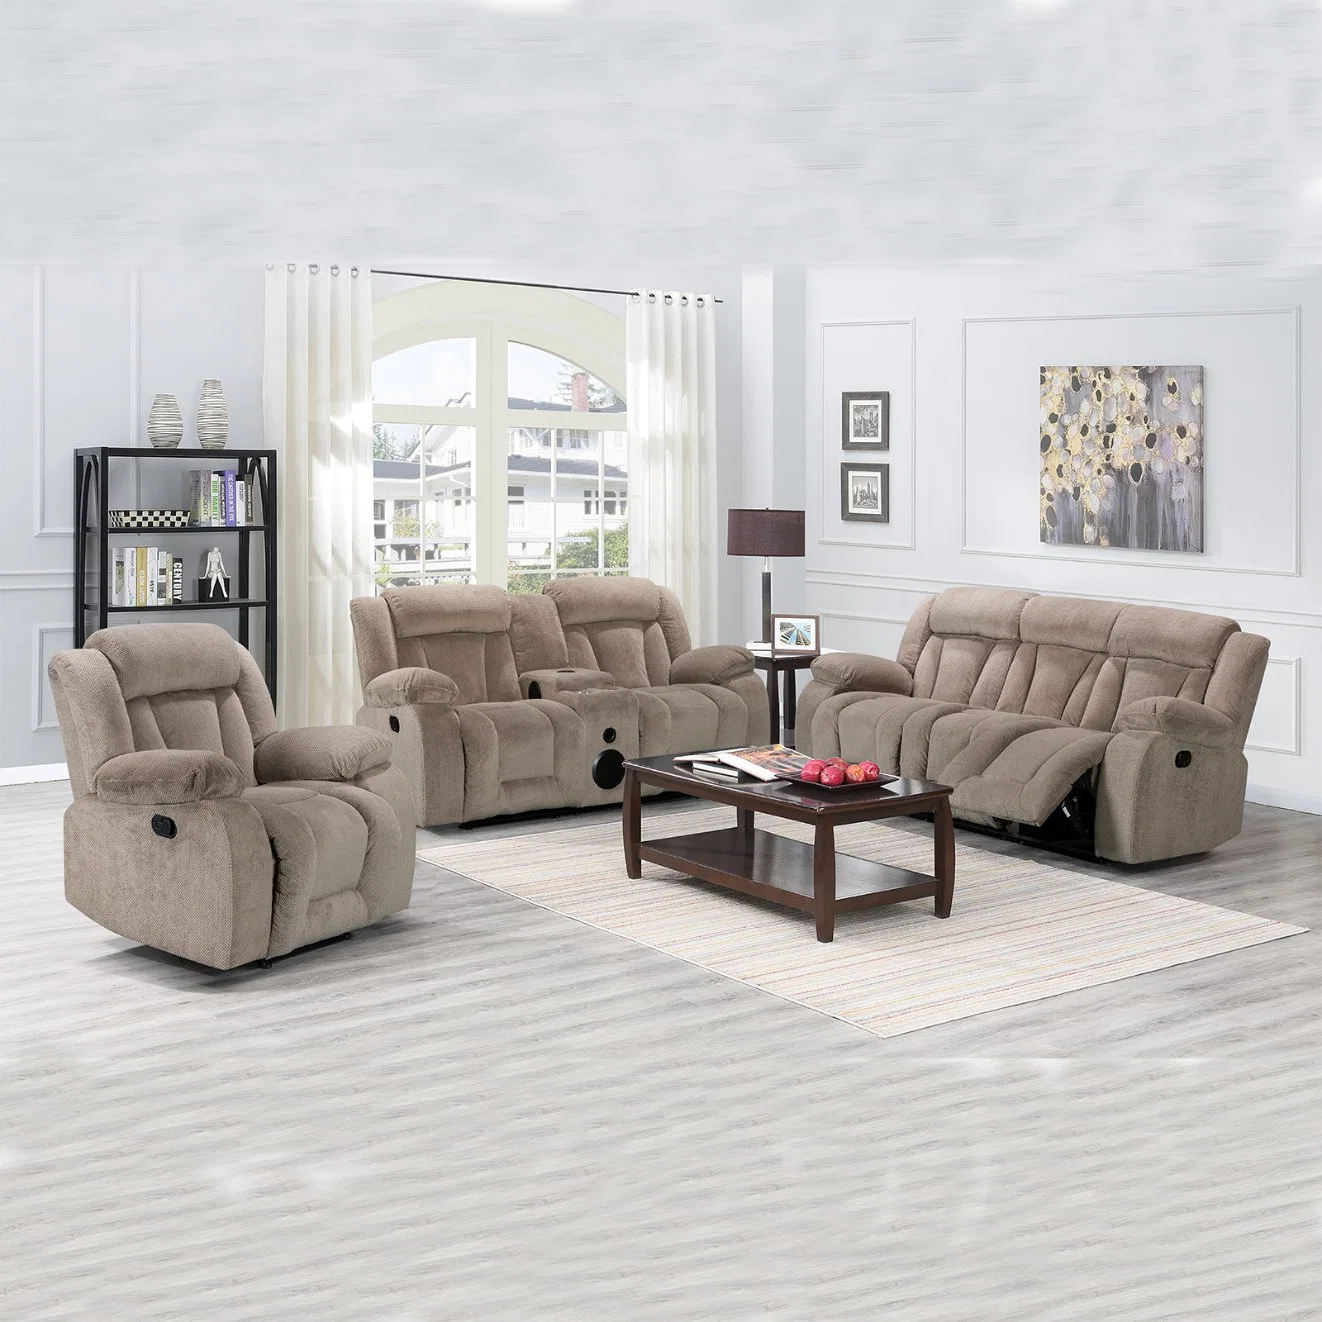 أريكة مريحة يدوية عملية يمكن تحويلها إلى أريكة يمكن تحويلها إلى مقعد غرفة المعيشة